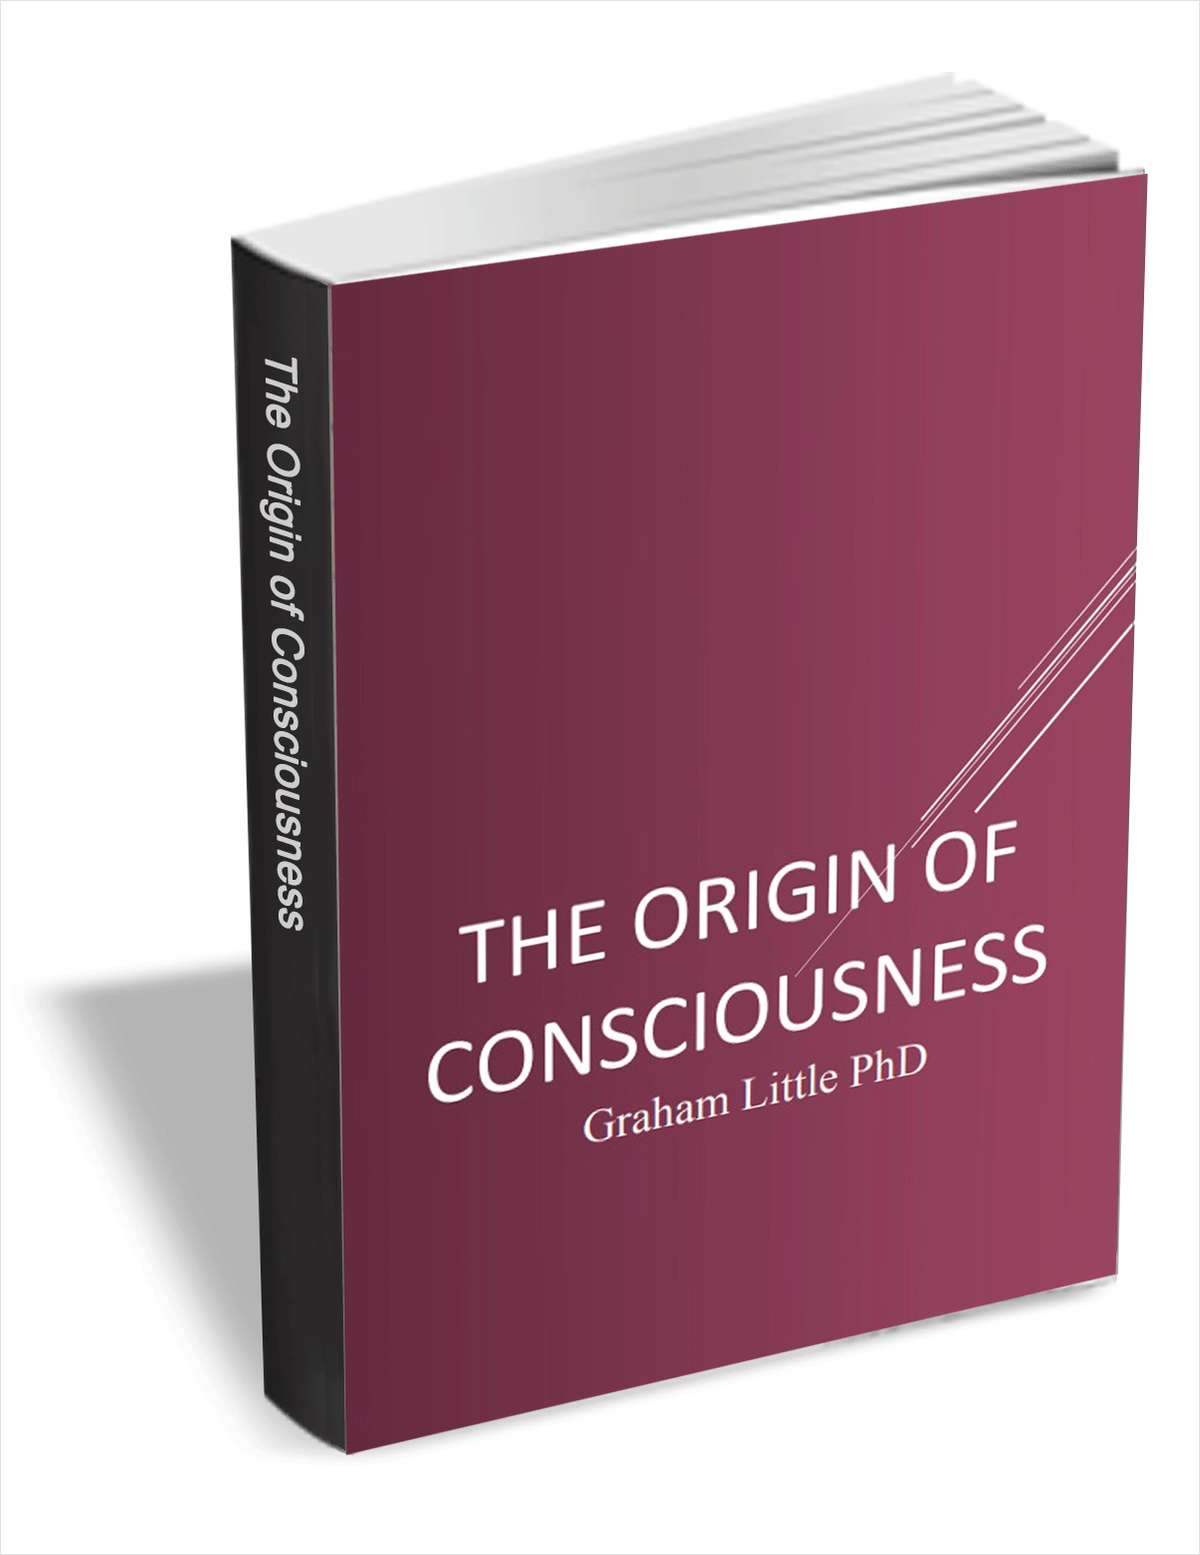 The Origin of Consciousness